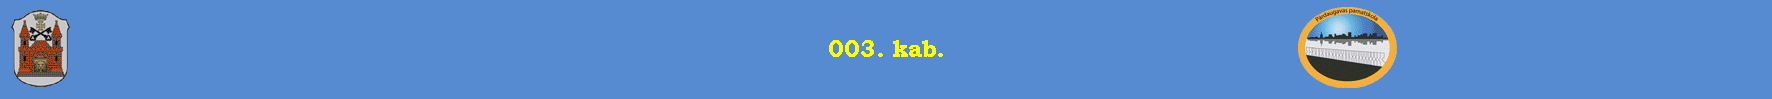 003. kab.